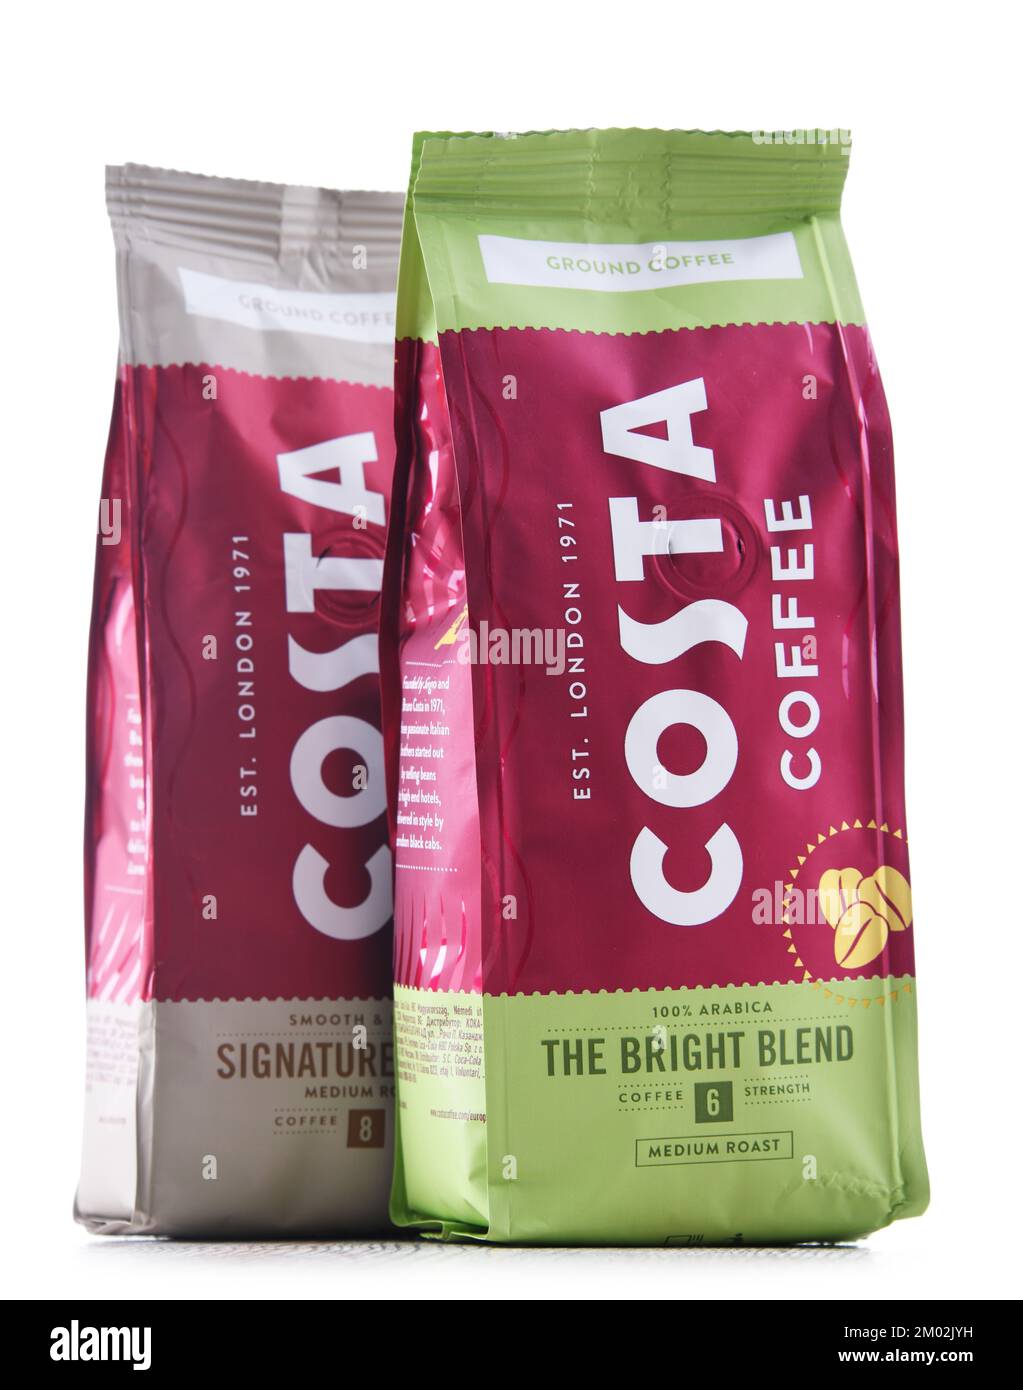 POZNAN, POLOGNE - JUL 14, 2022: Paquets de Costa Coffee, une marque de la société multinationale britannique de coffee House dont le siège social est à Dunstable, Bedfordshire Banque D'Images